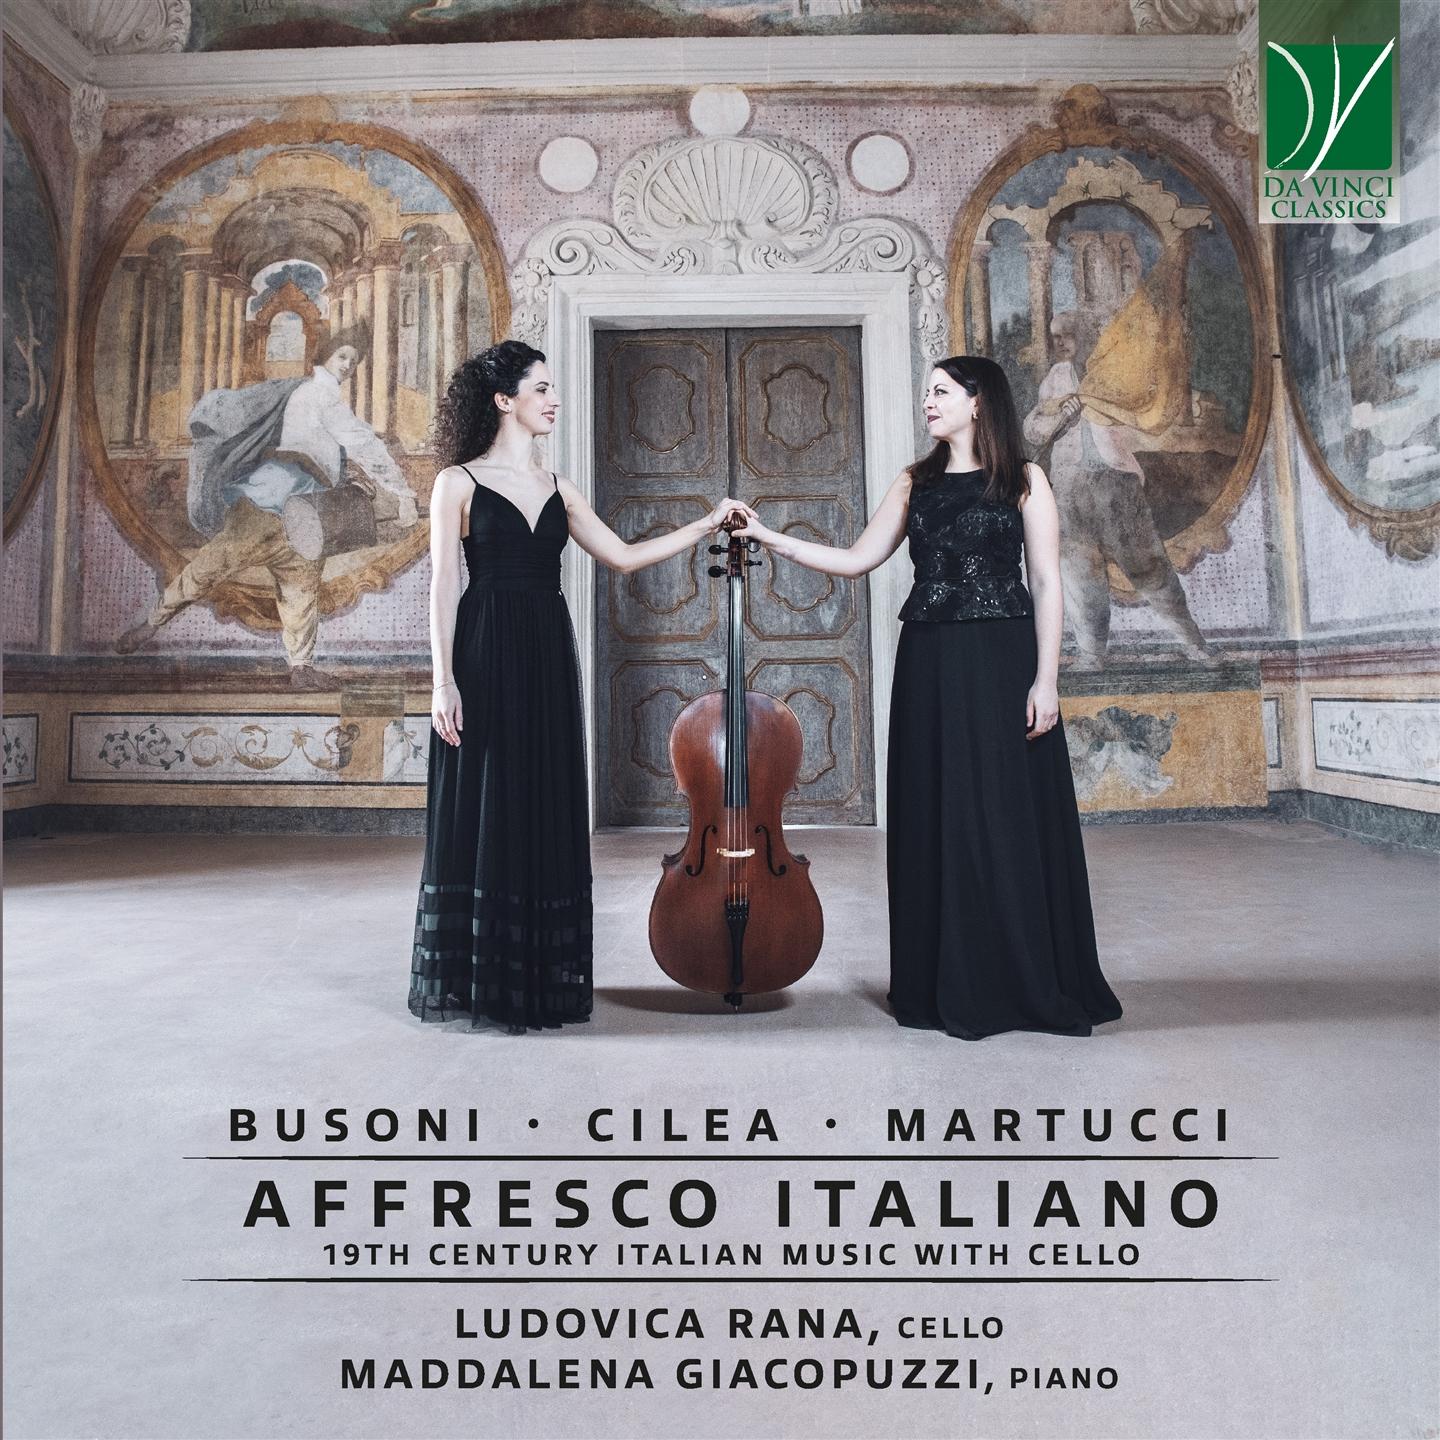 AFFRESCO ITALIANO - 19TH CENTURY ITALIAN MUSIC WITH CELLO